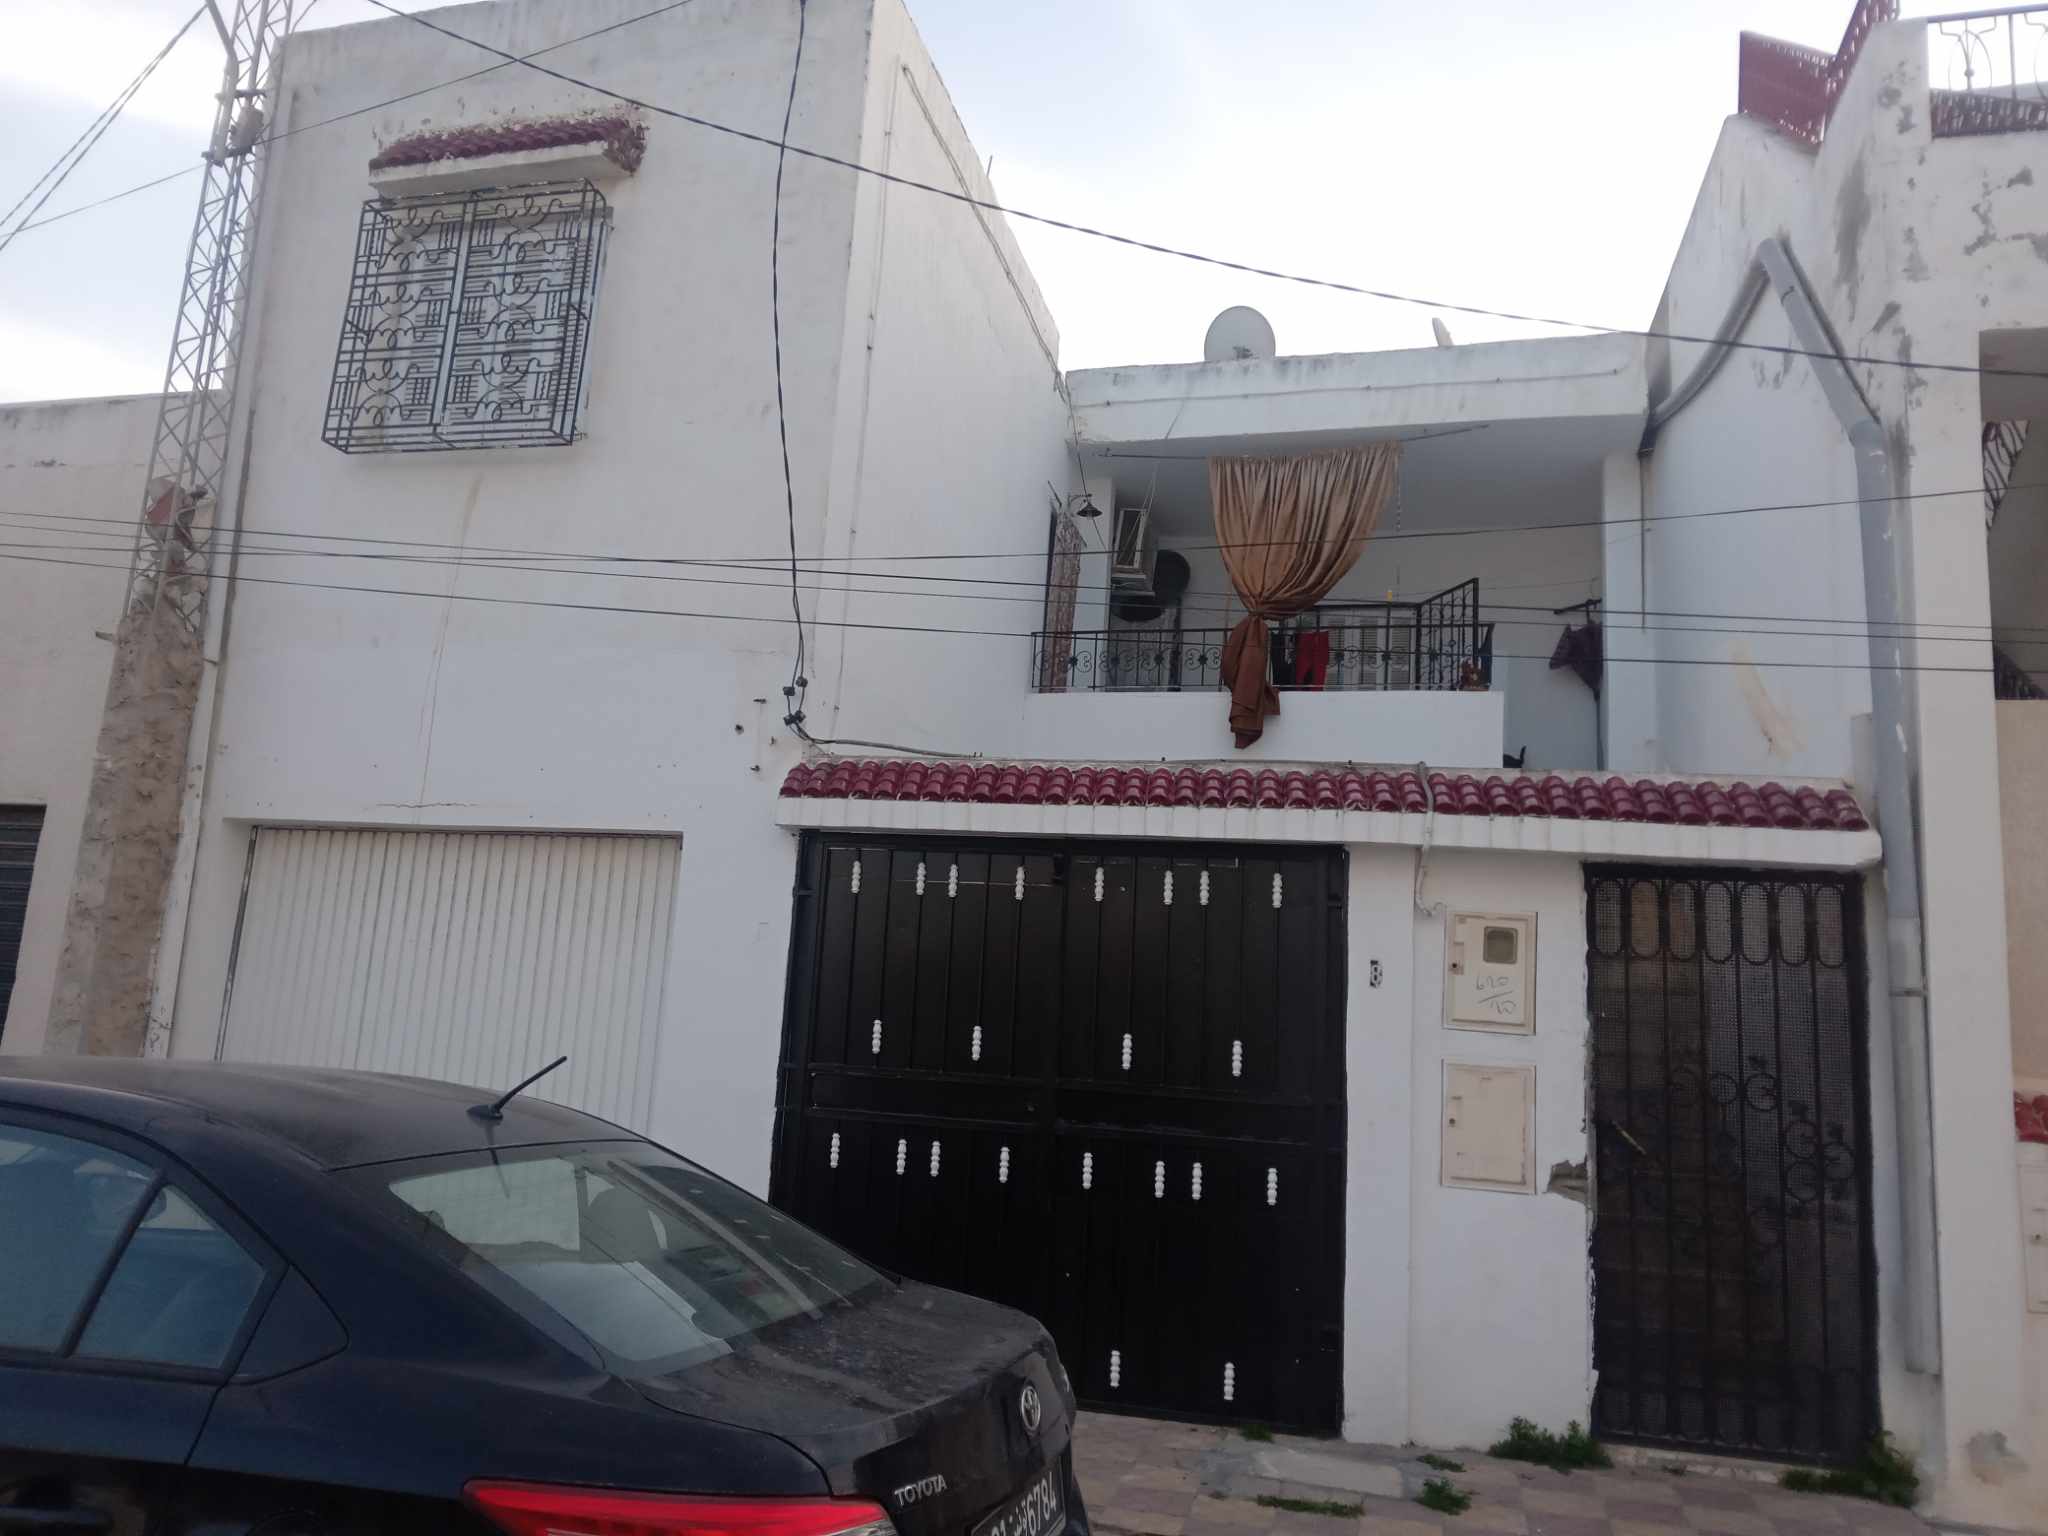 Ezzouhour (Tunis) Ezzouhour 4 Vente Duplex Maison de 2 tages spars plus un garage